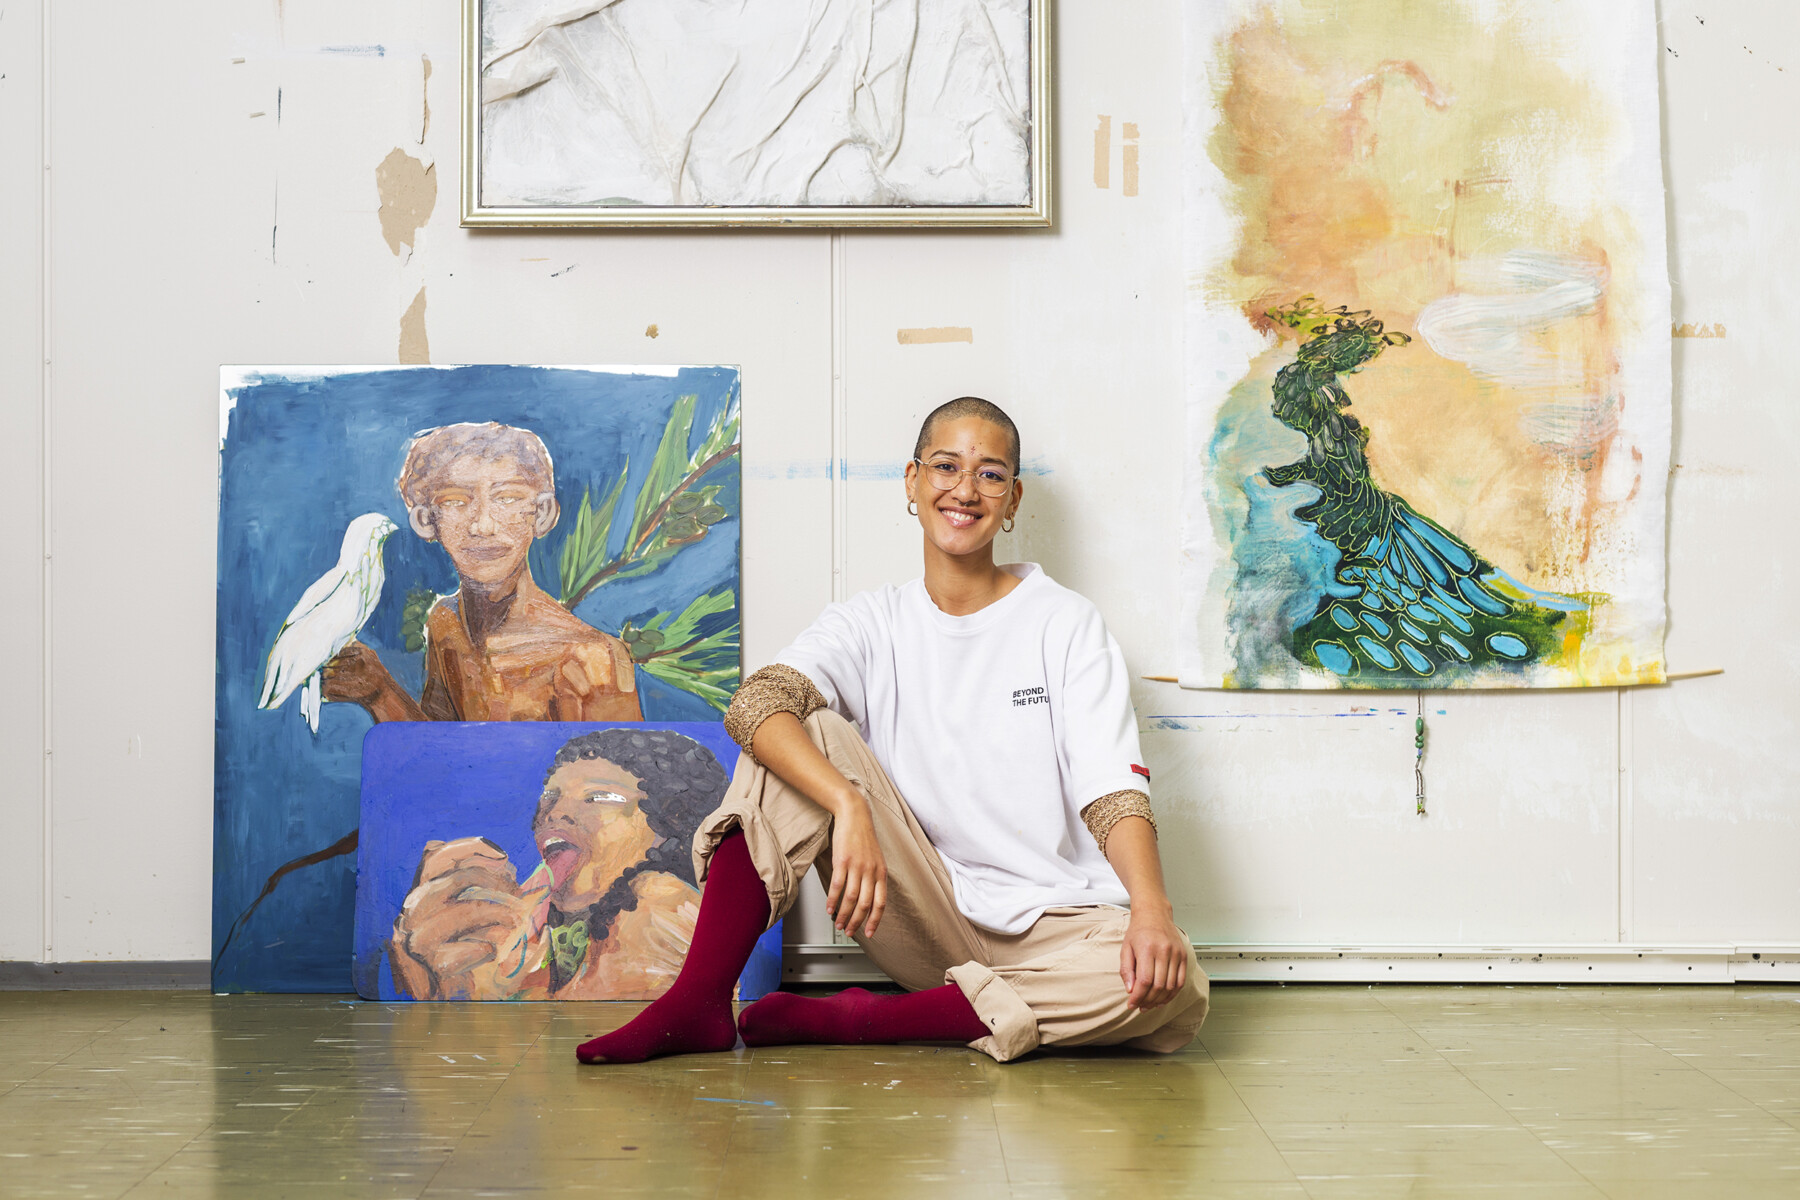 Uma pessoa com cabelo muito curto está sentada no chão de um estúdio de arte com pinturas na parede.